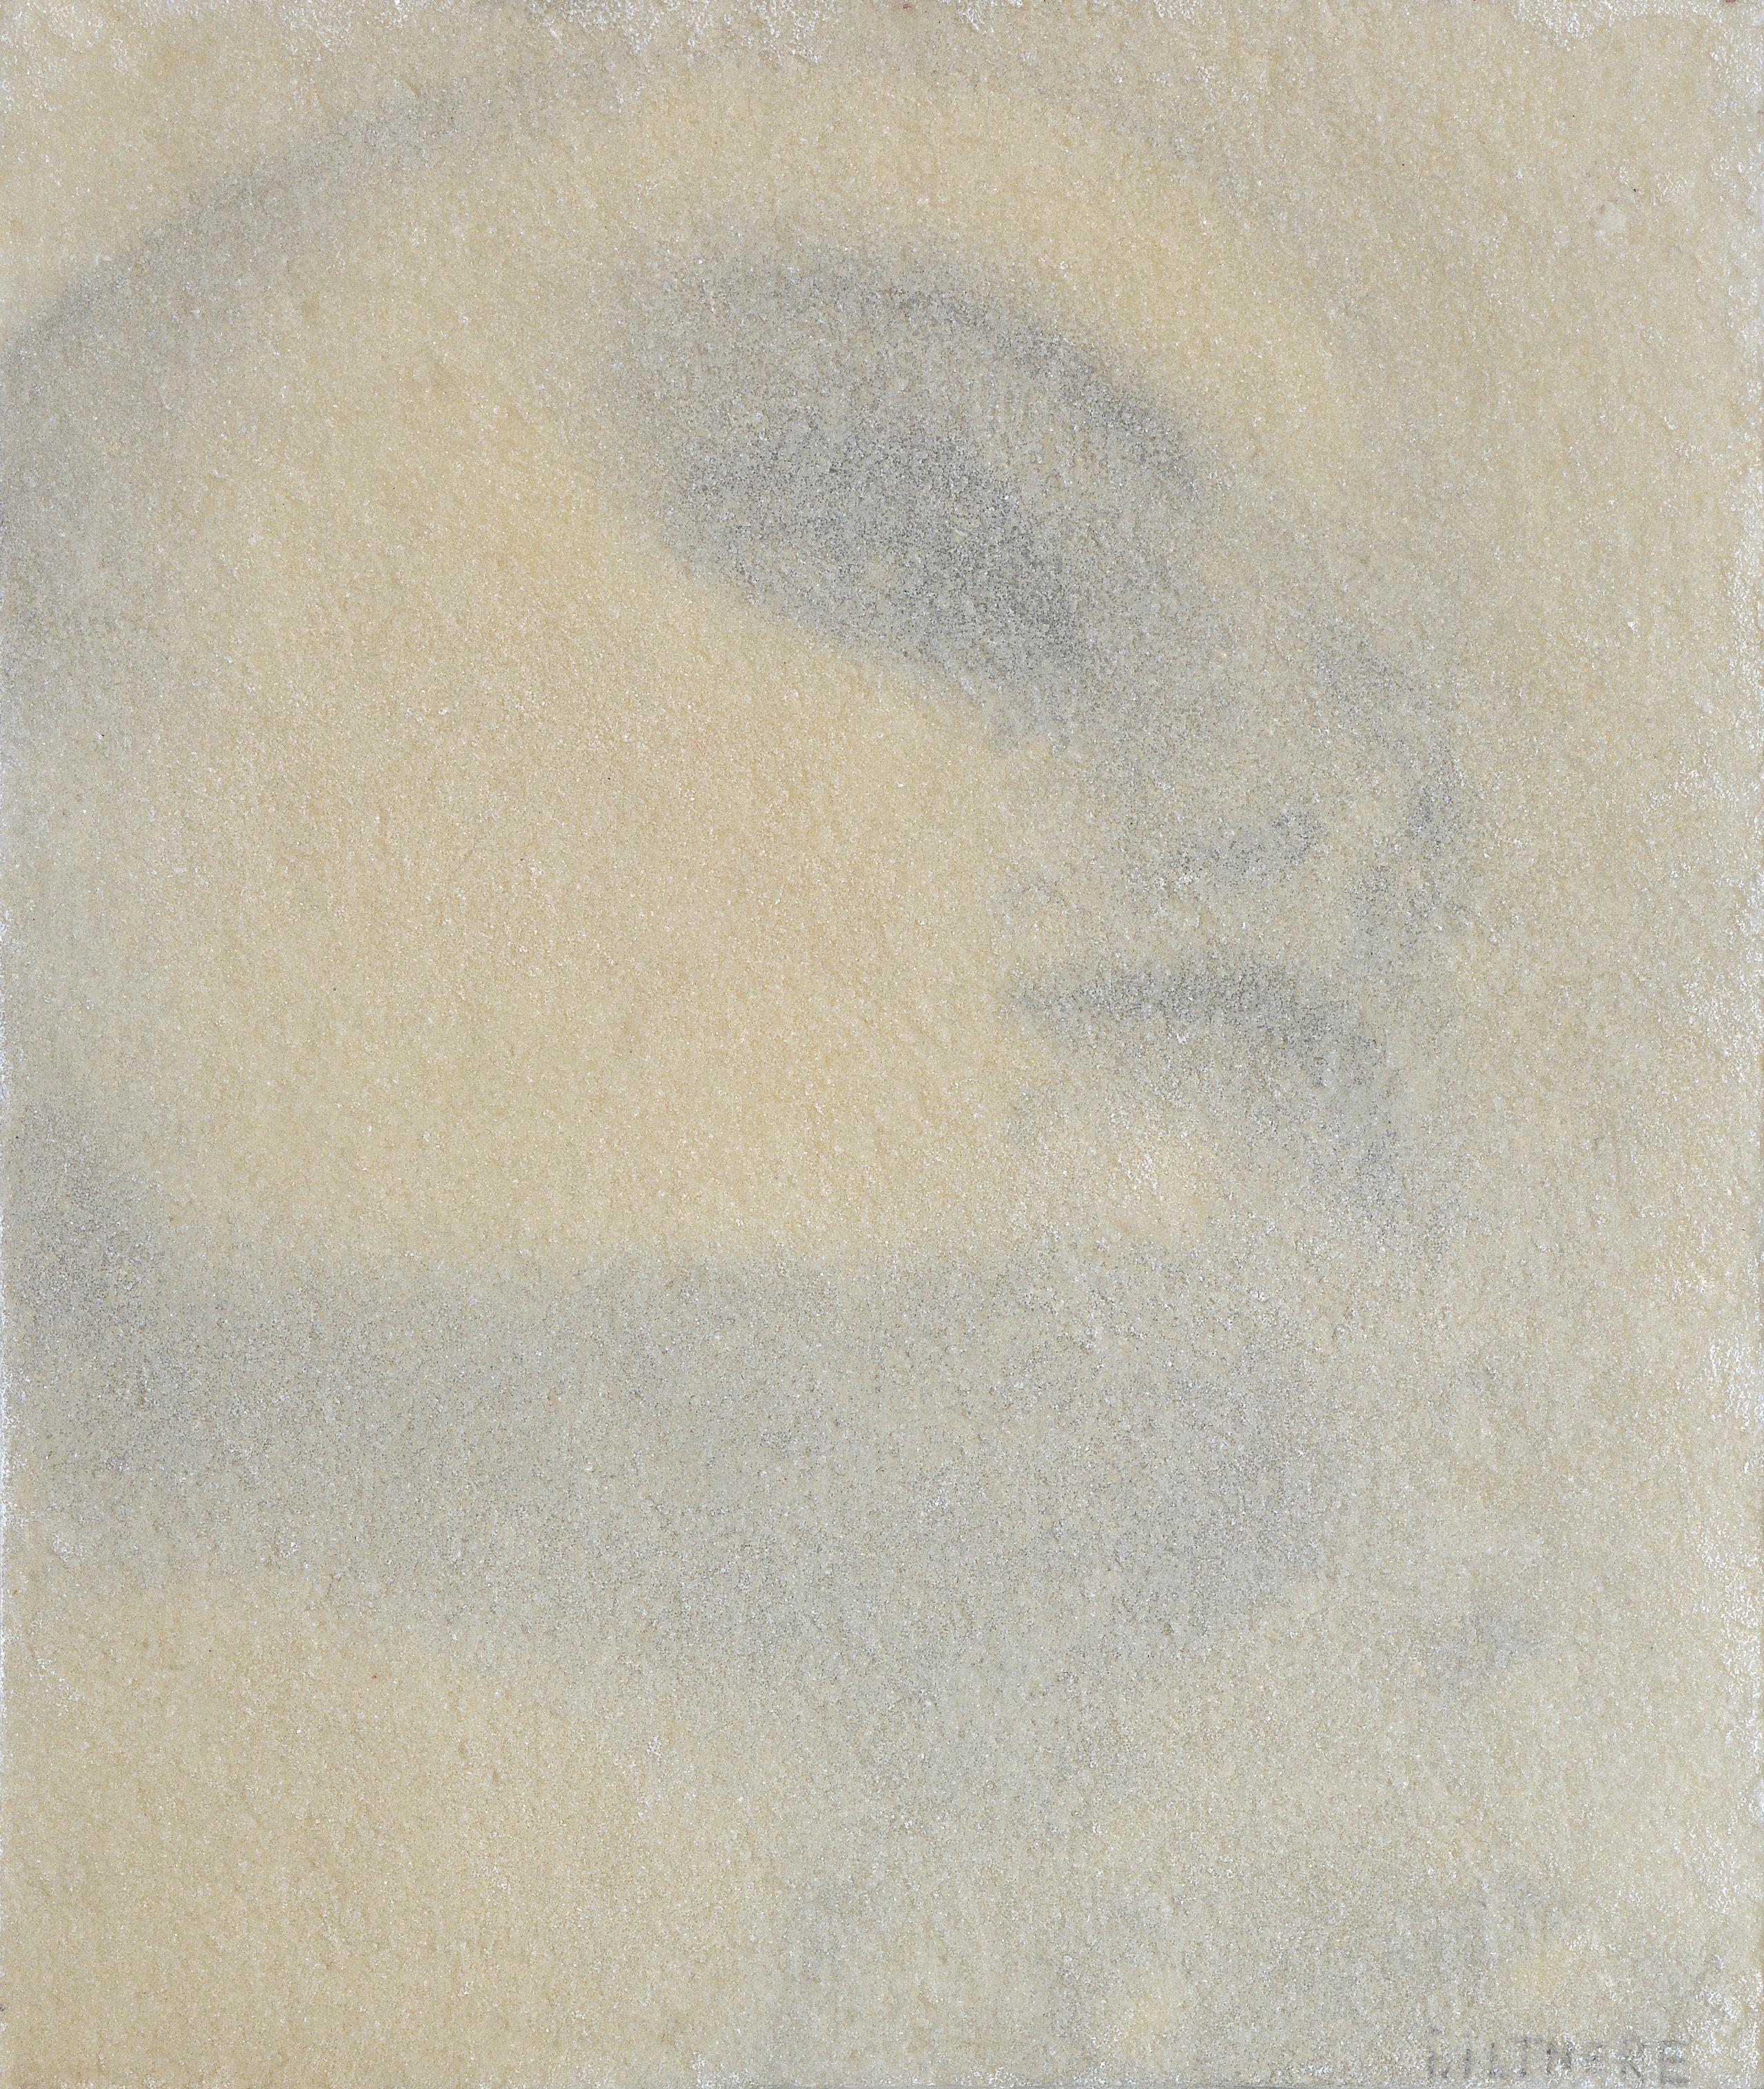 Portrait Painting Ieva Iltnere - Fresco. 2001, toile, techniques mixtes, 46 x 38 cm